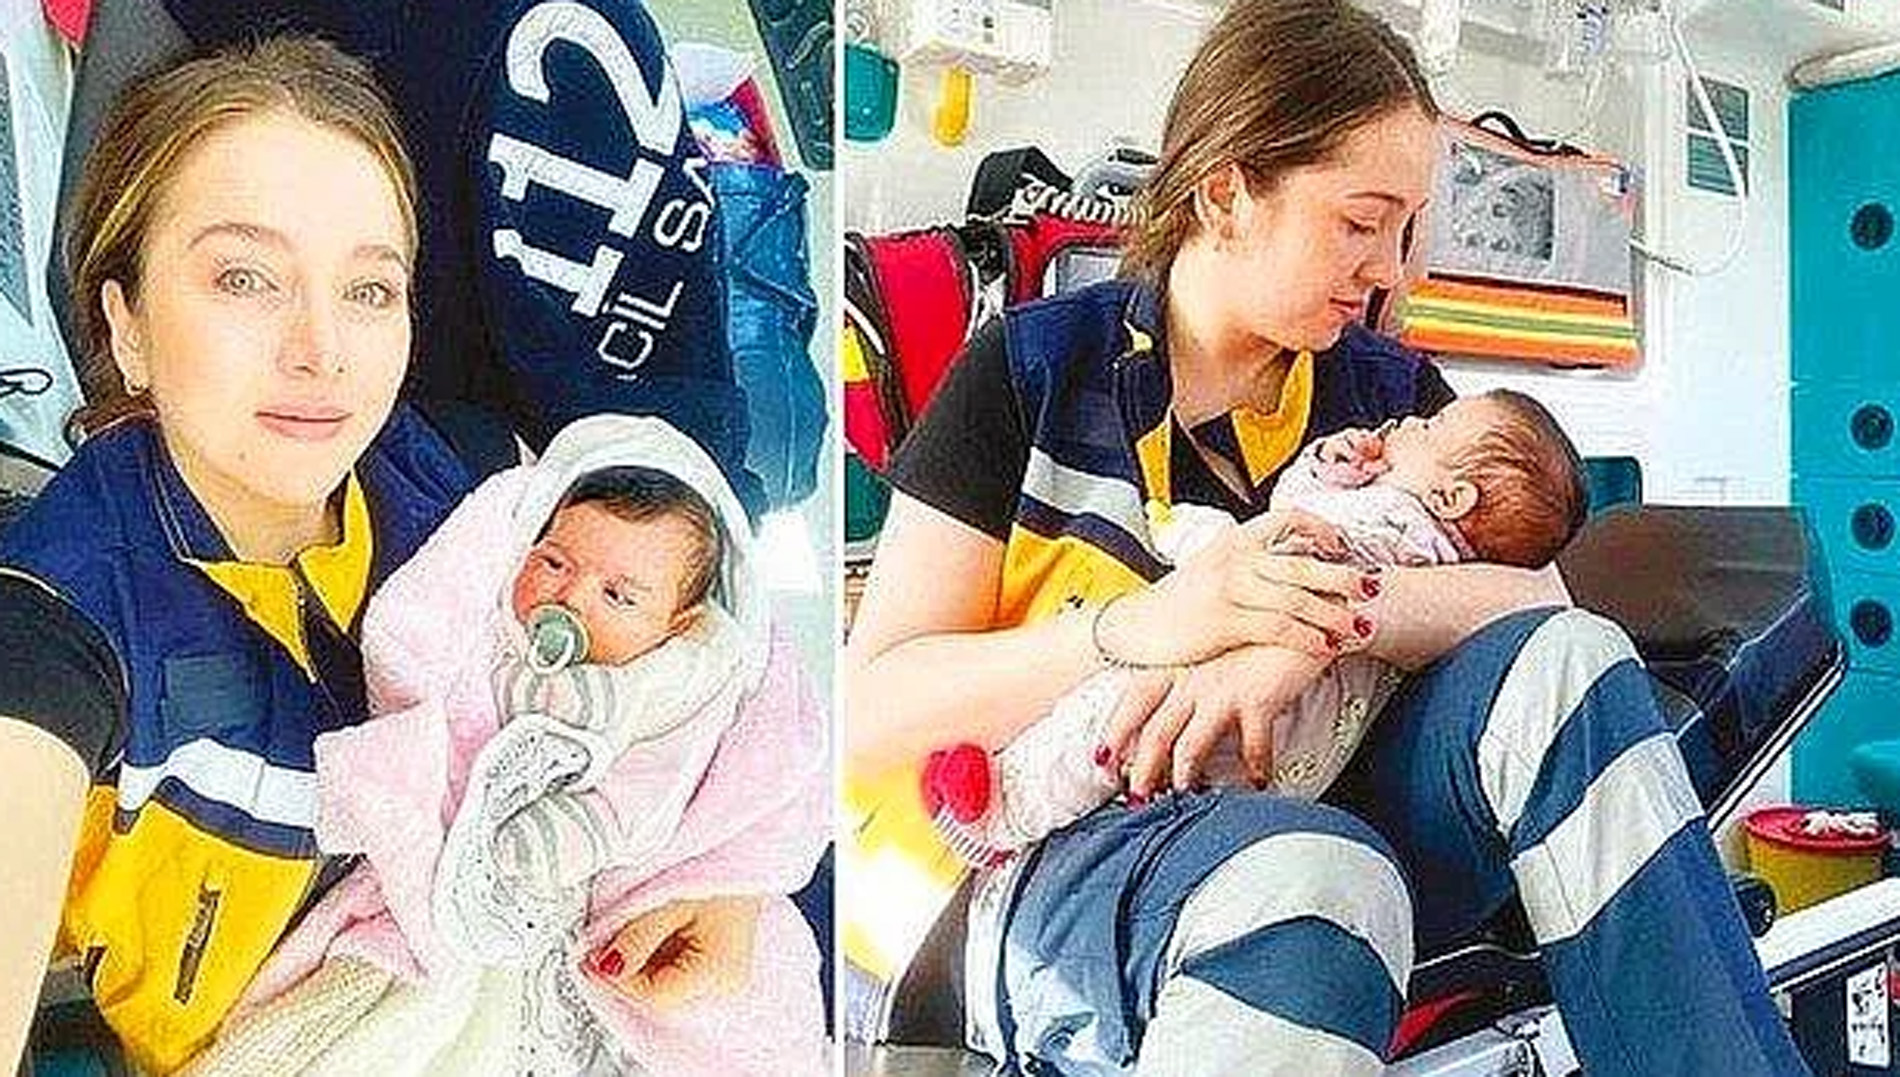 Ünlü manken Sevda Demirel'in isteği göz yaşarttı! Cumhurbaşkanı Erdoğan'a Nisa bebek için seslendi! Lütfen bana verin